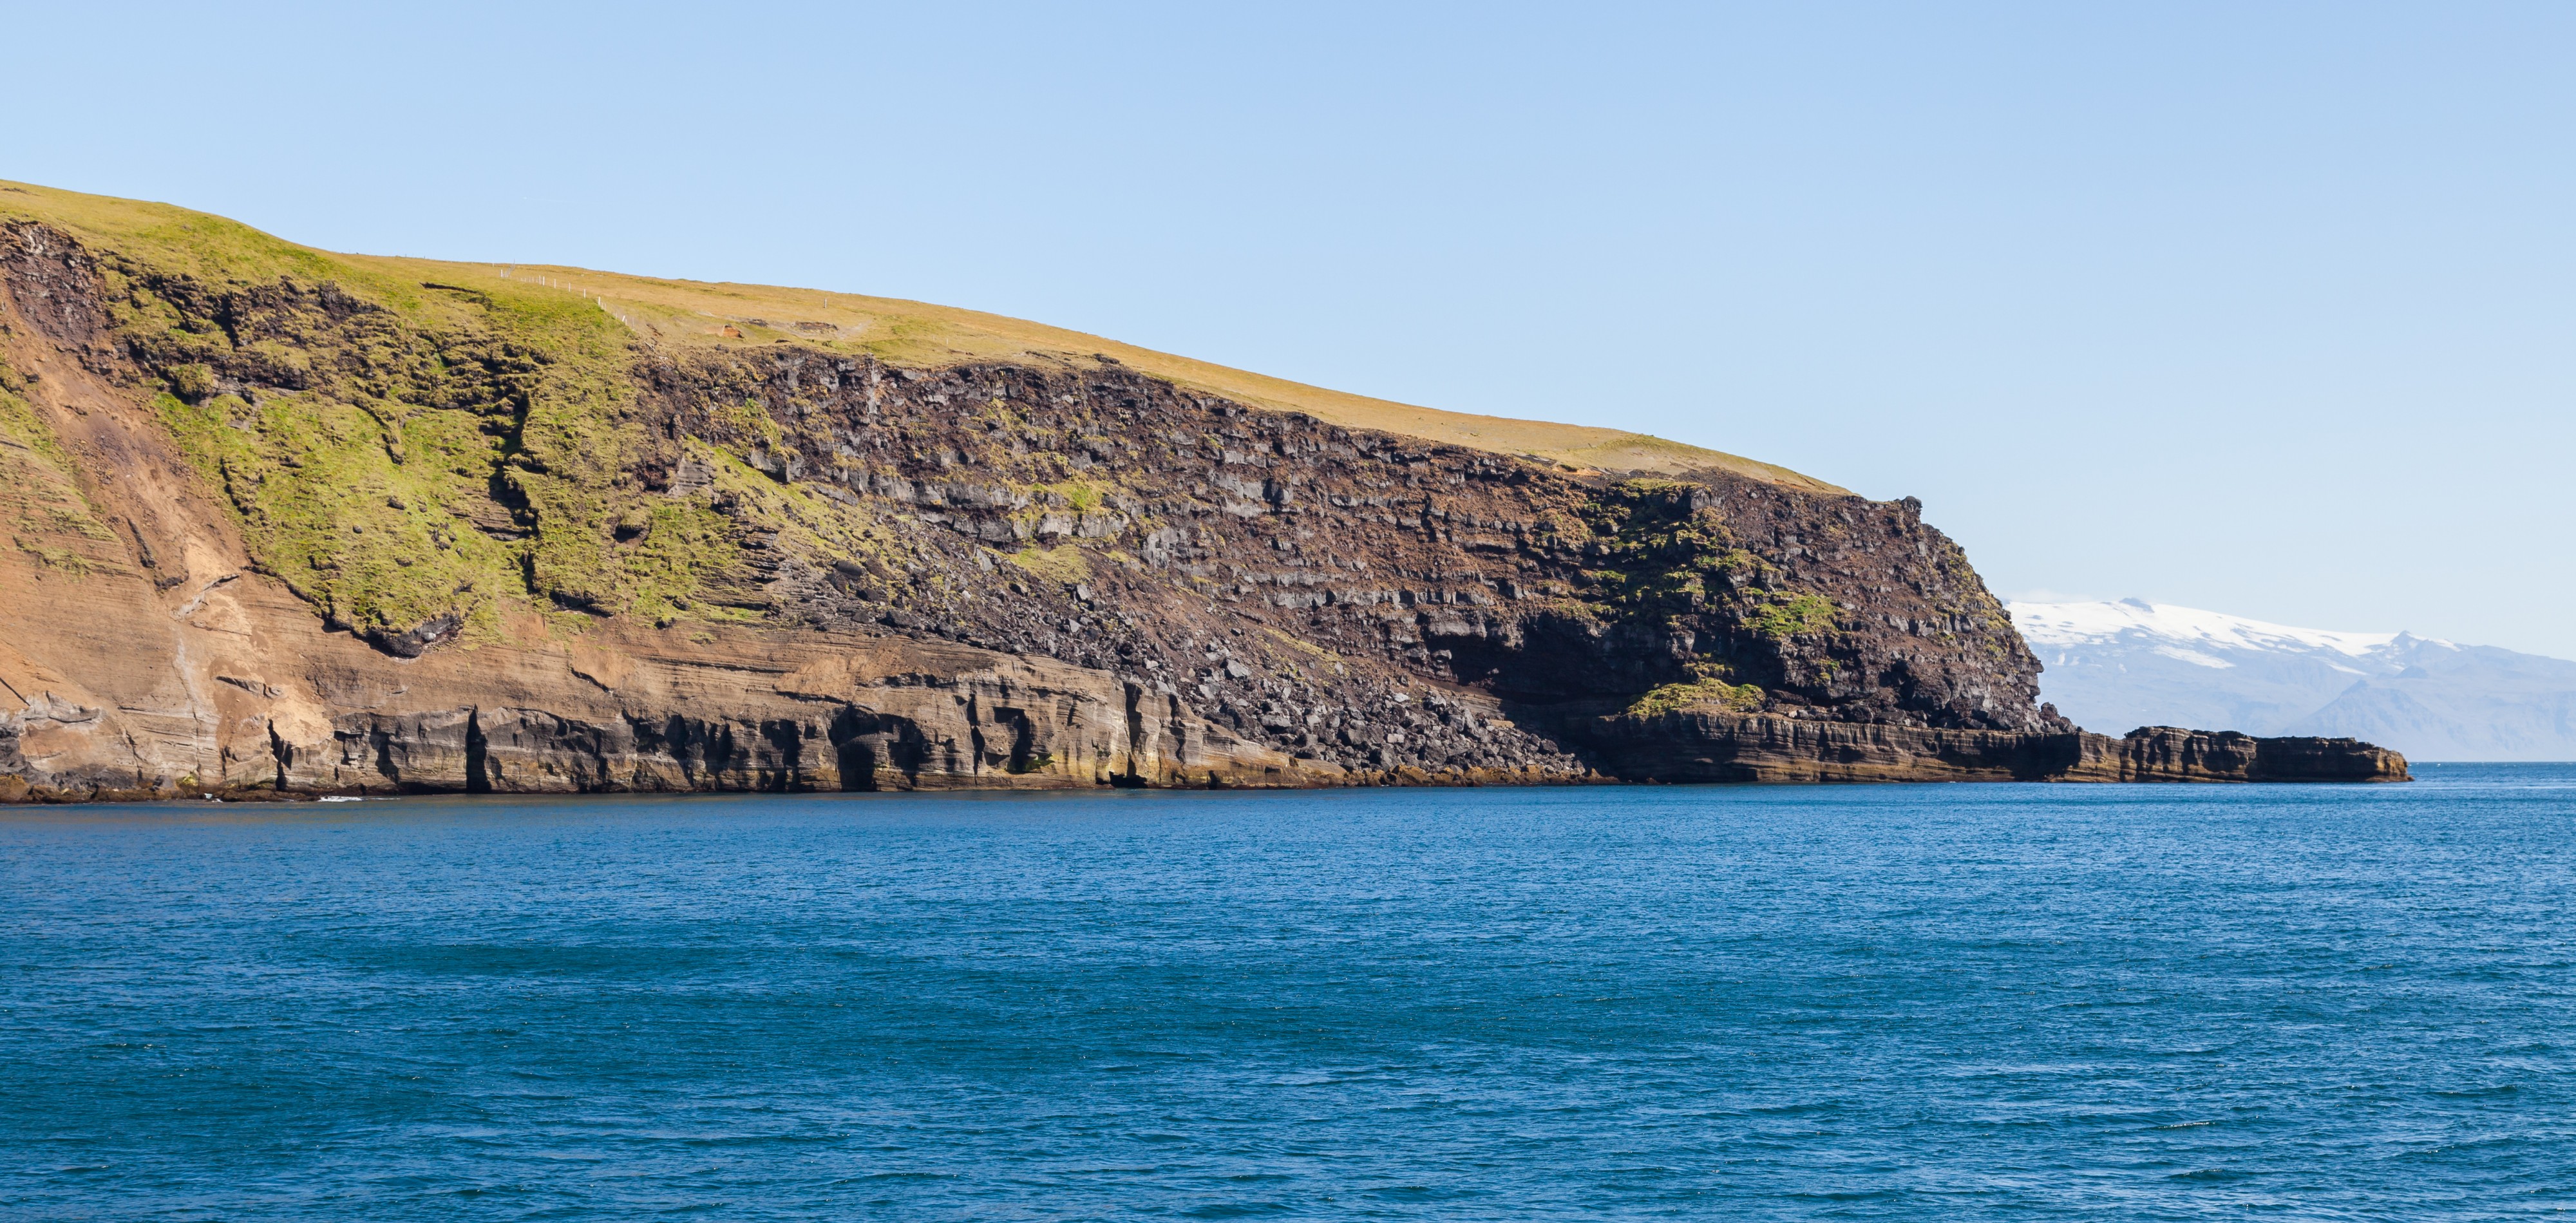 Acantilados de Heimaey, Islas Vestman, Suðurland, Islandia, 2014-08-17, DD 063